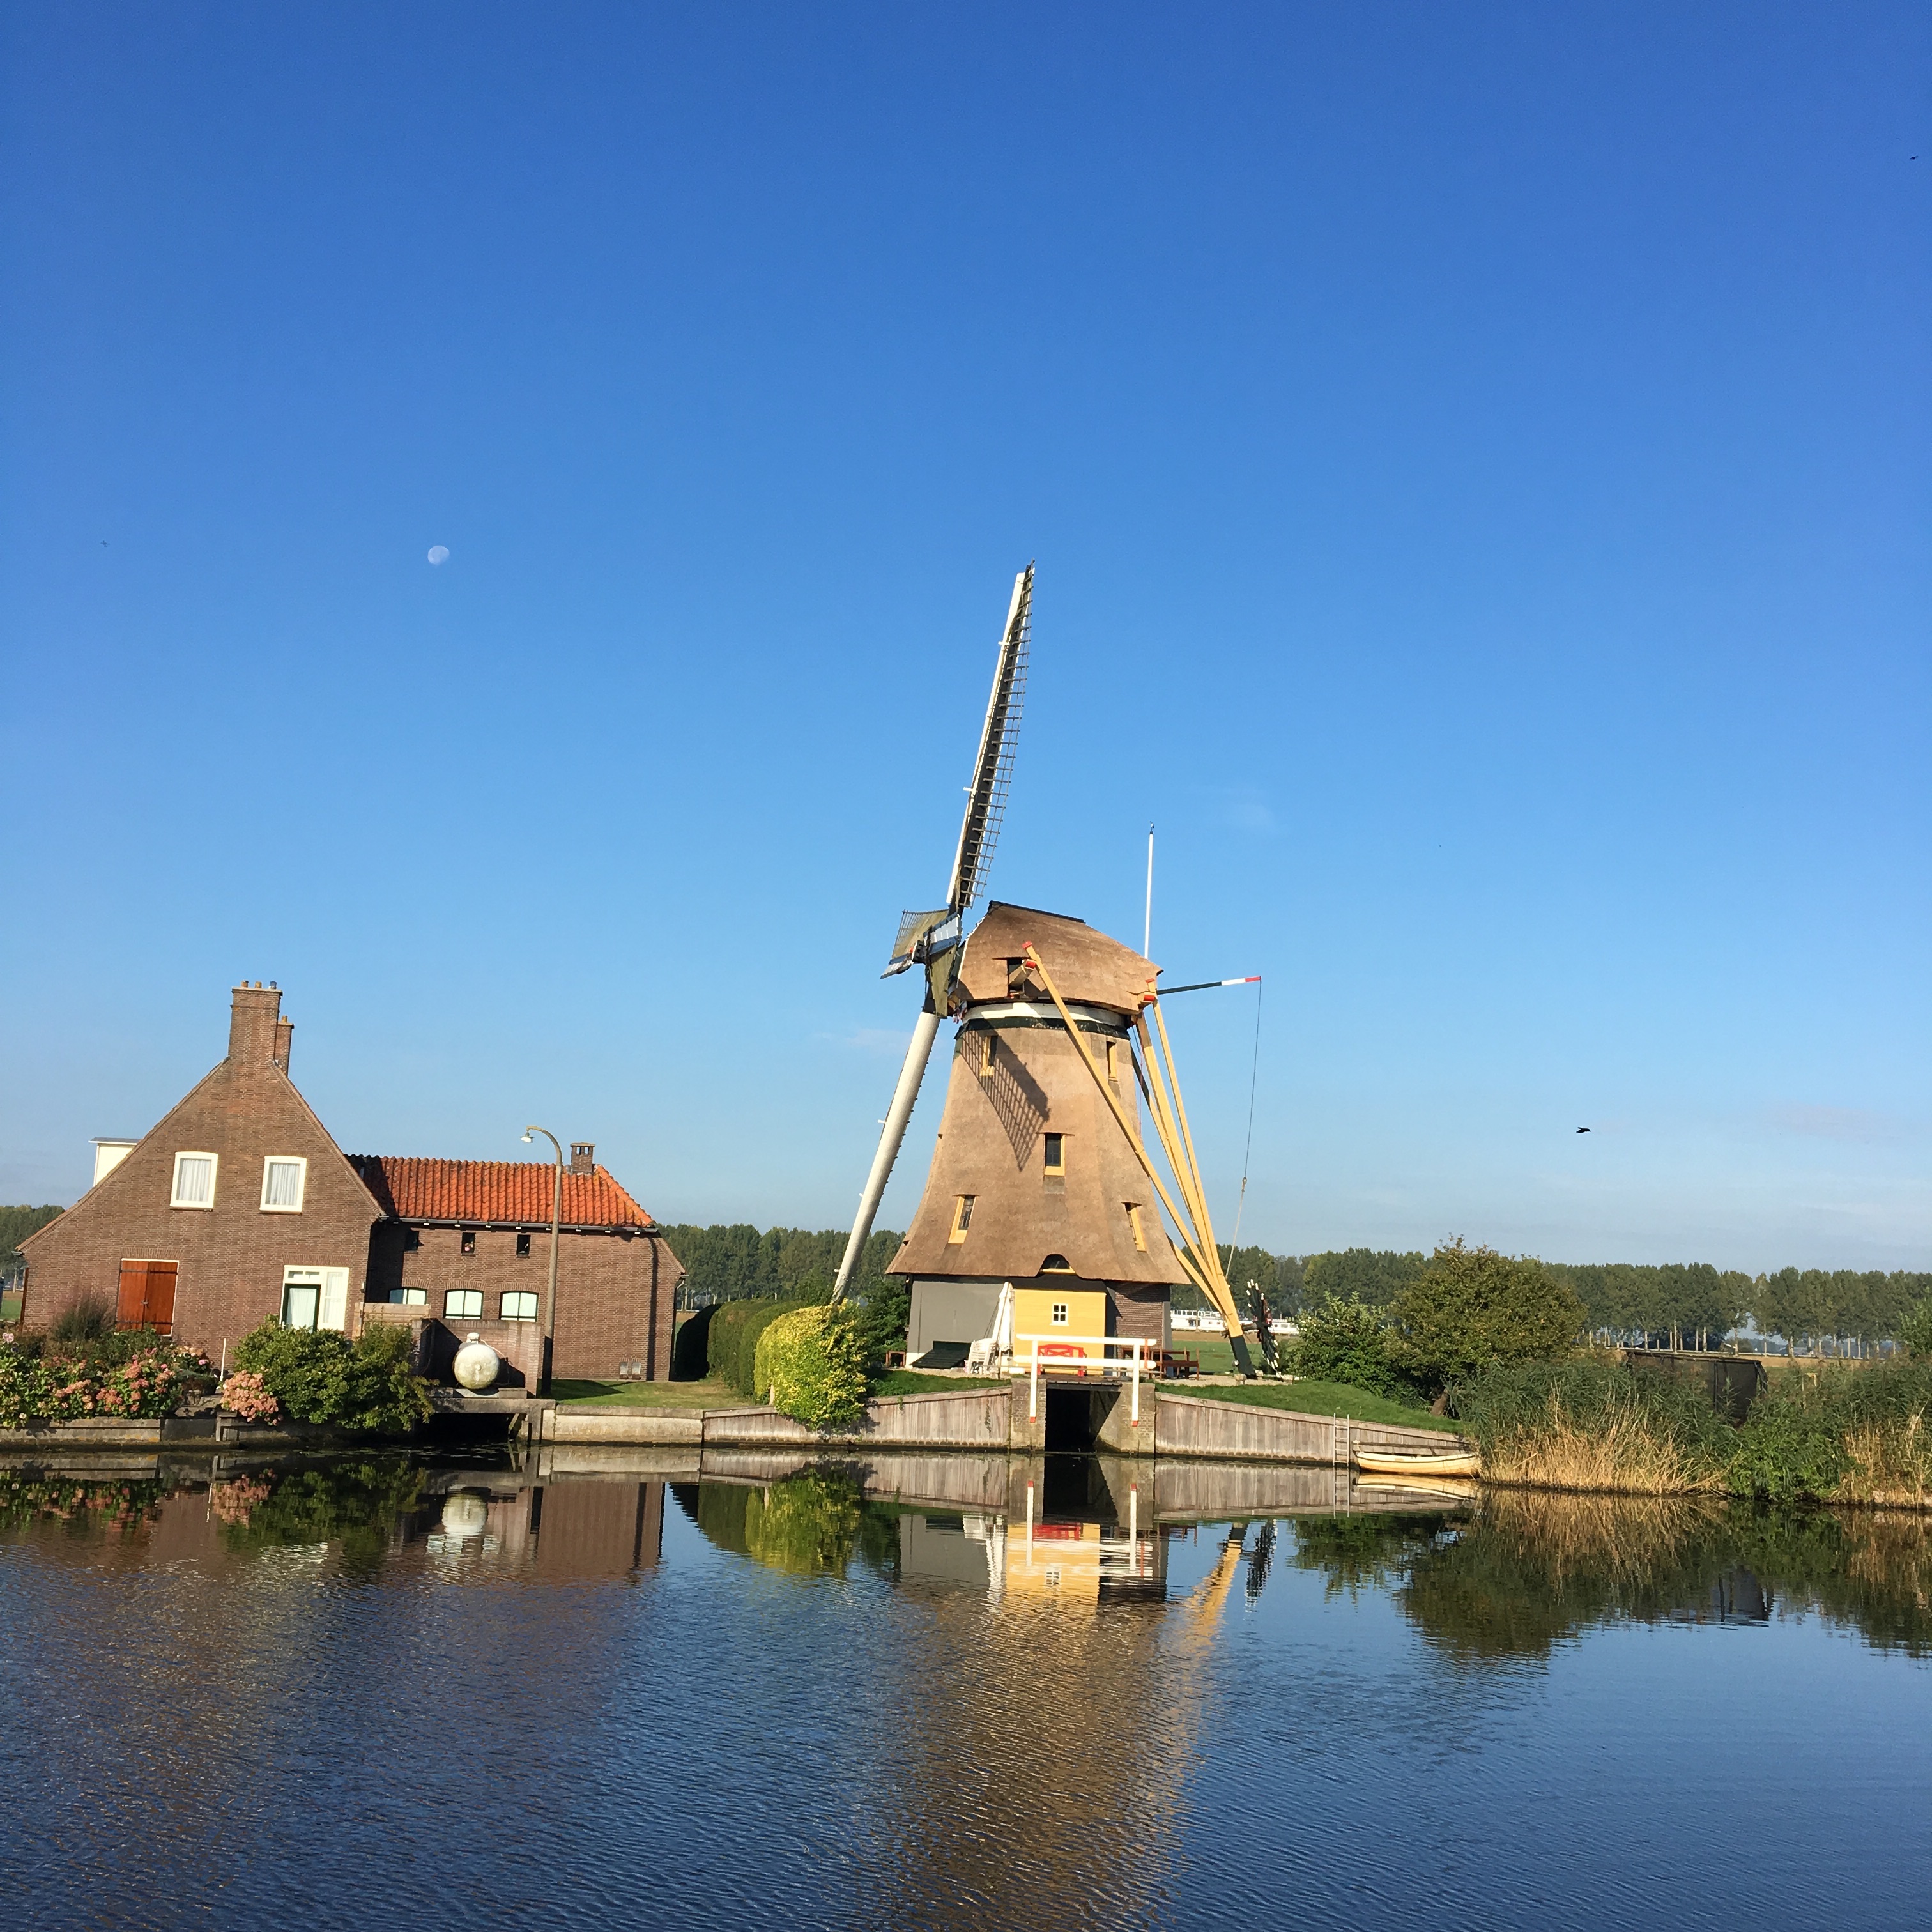 Dutch windmill at rest